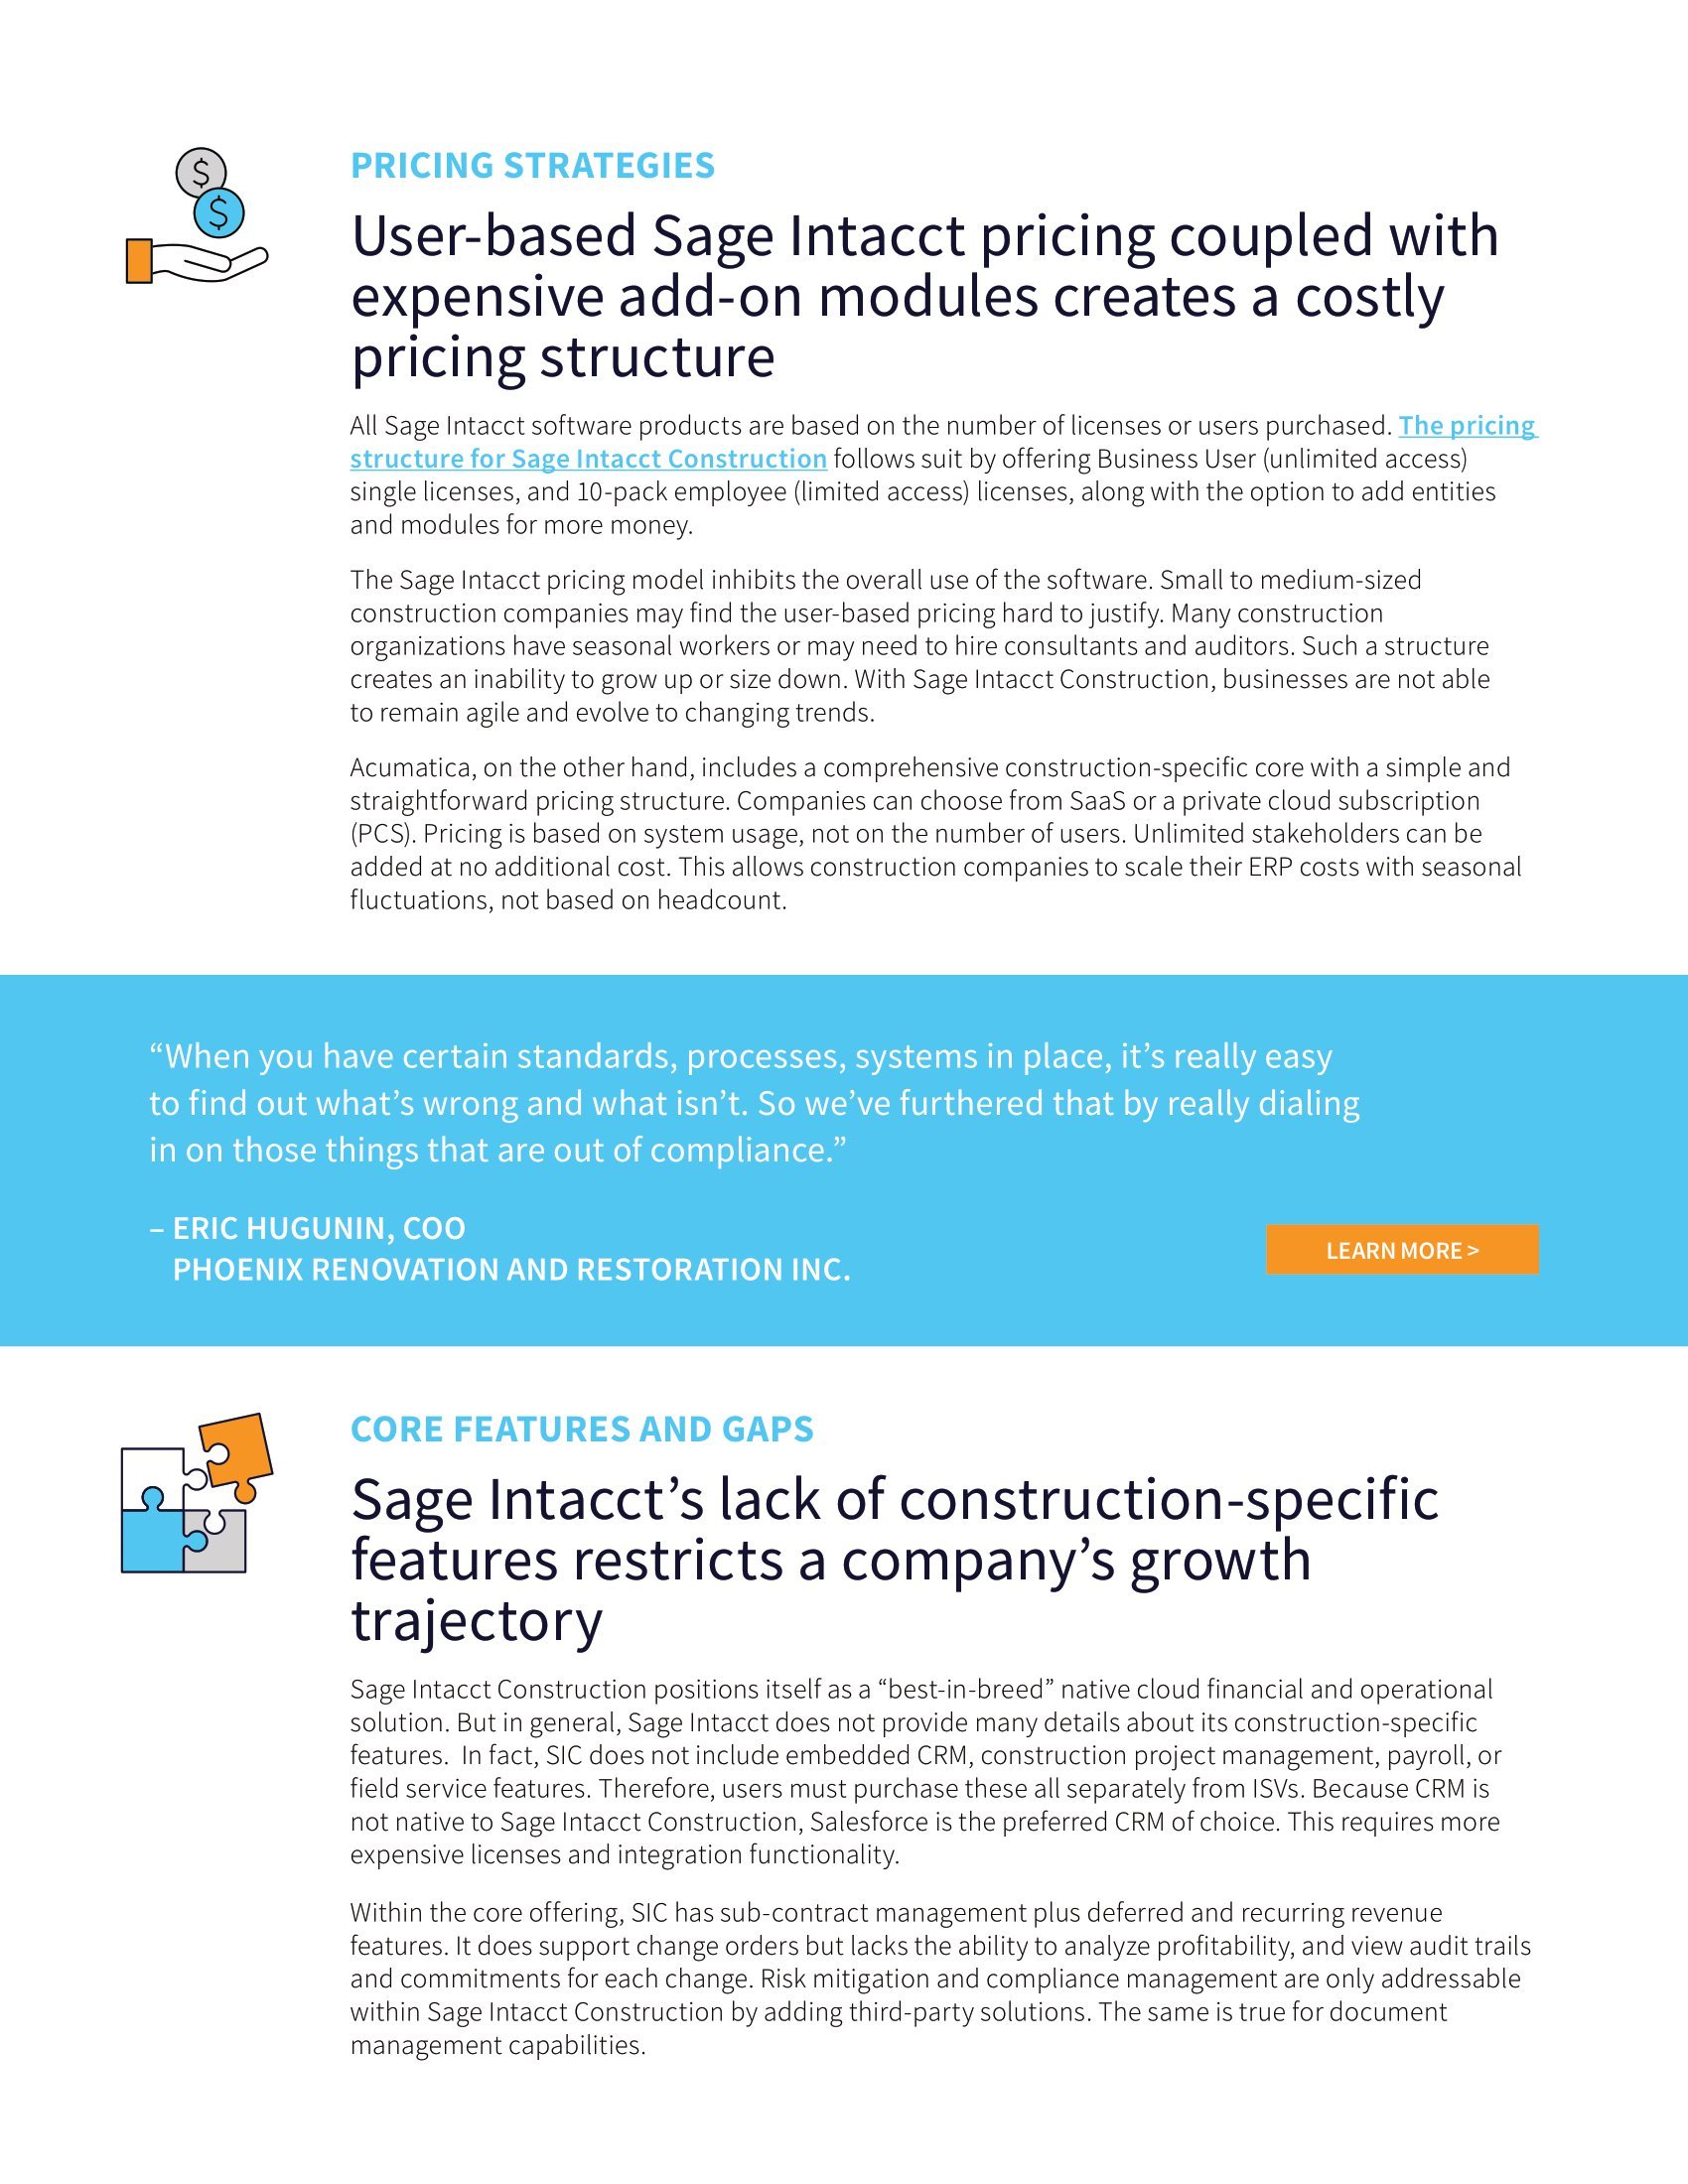 Comparaison entre Acumatica Construction Edition et Sage Intacct Construction, page 2